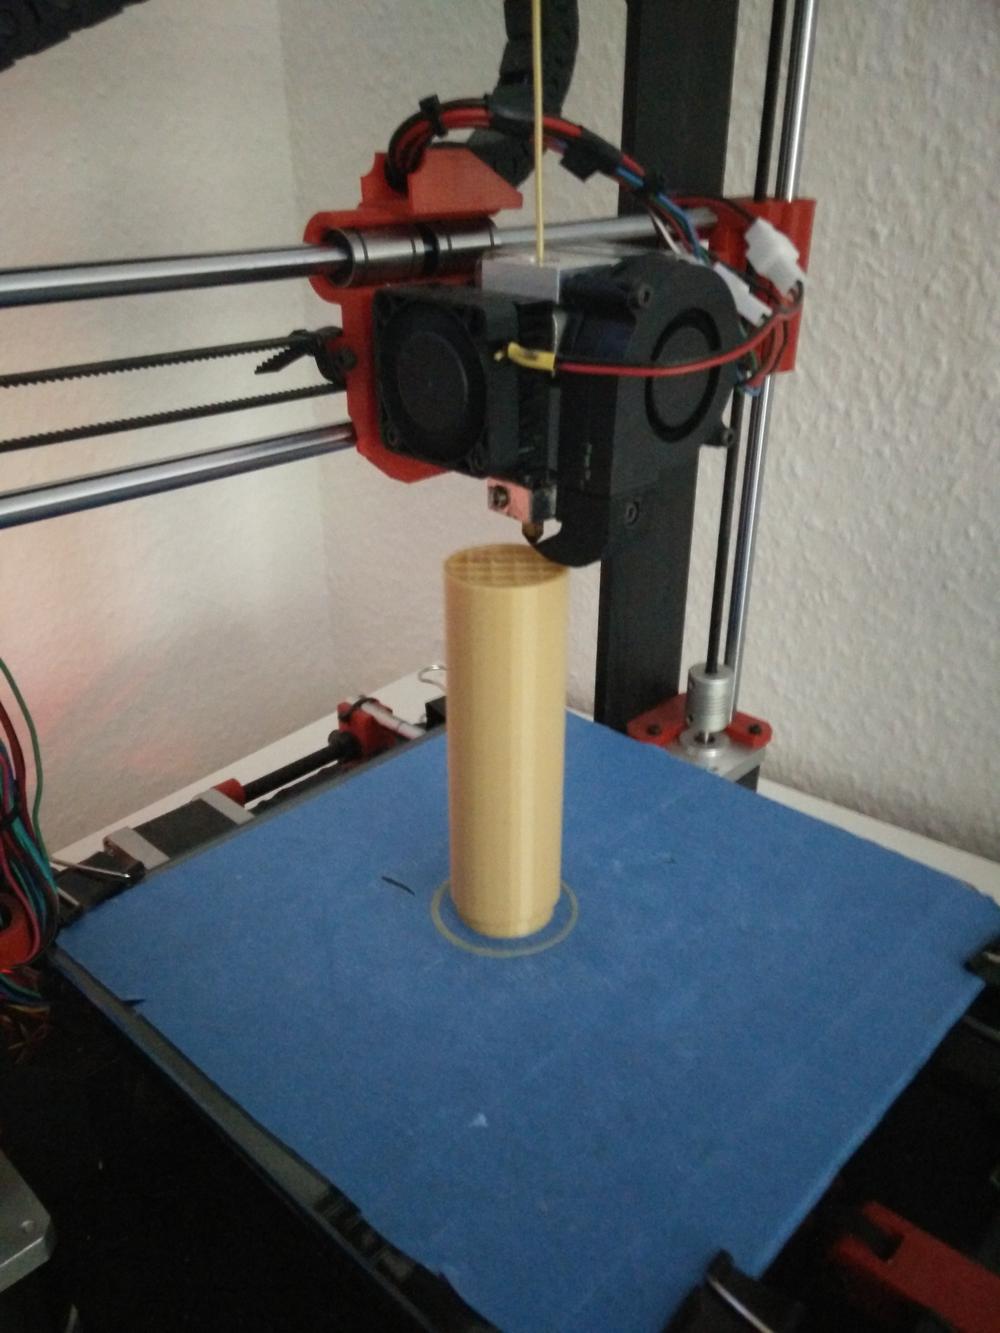 My first 3D printer